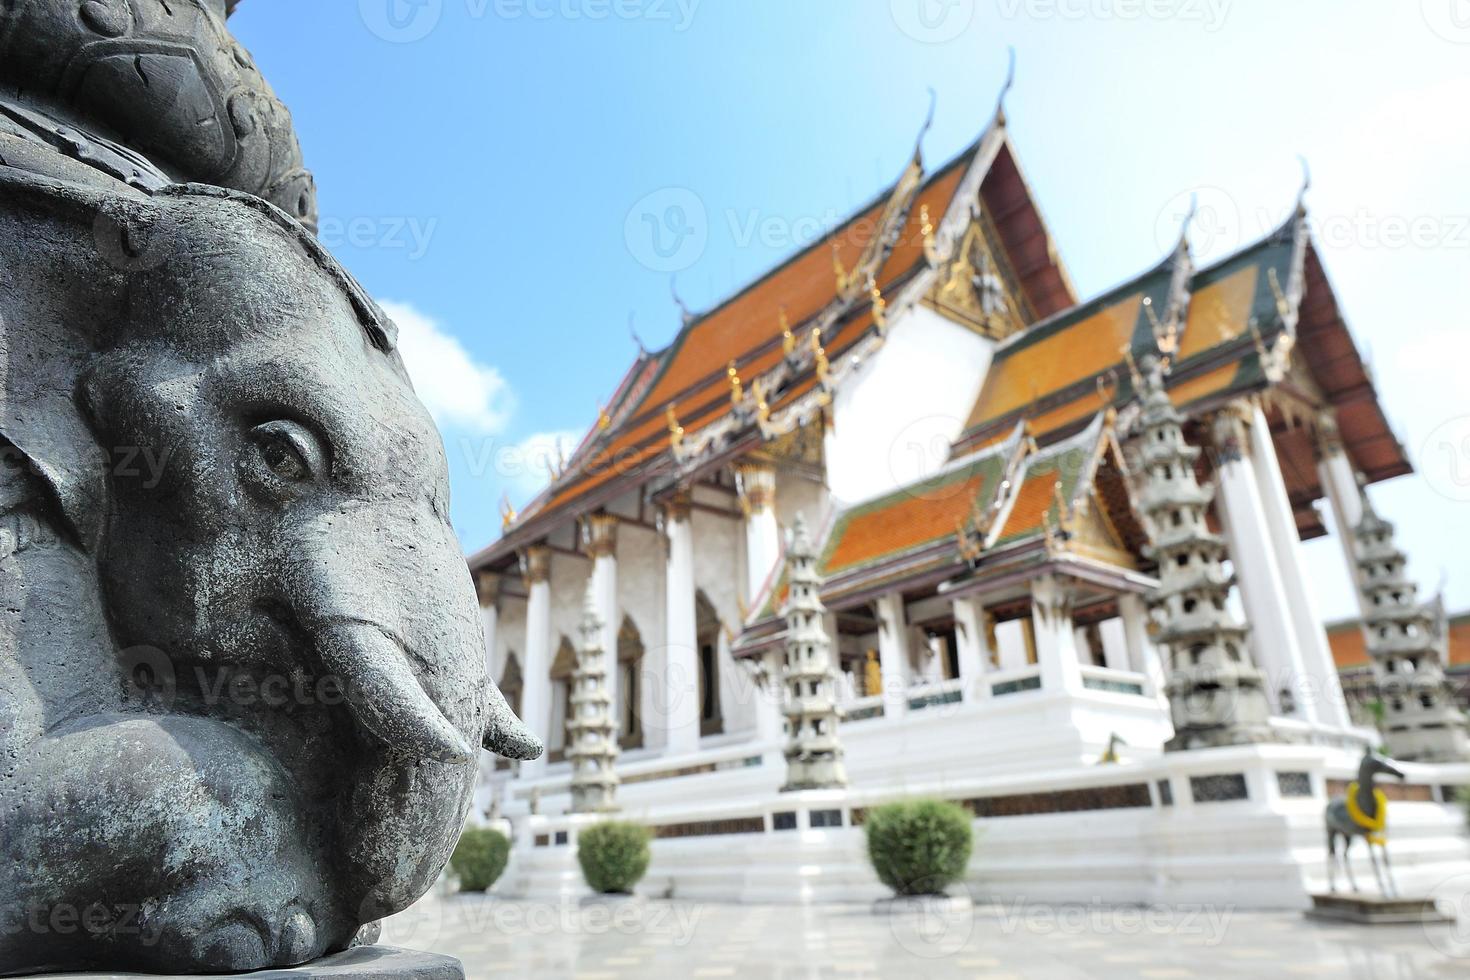 wat suthatthepwararam tempel i bangkok, Thailand foto